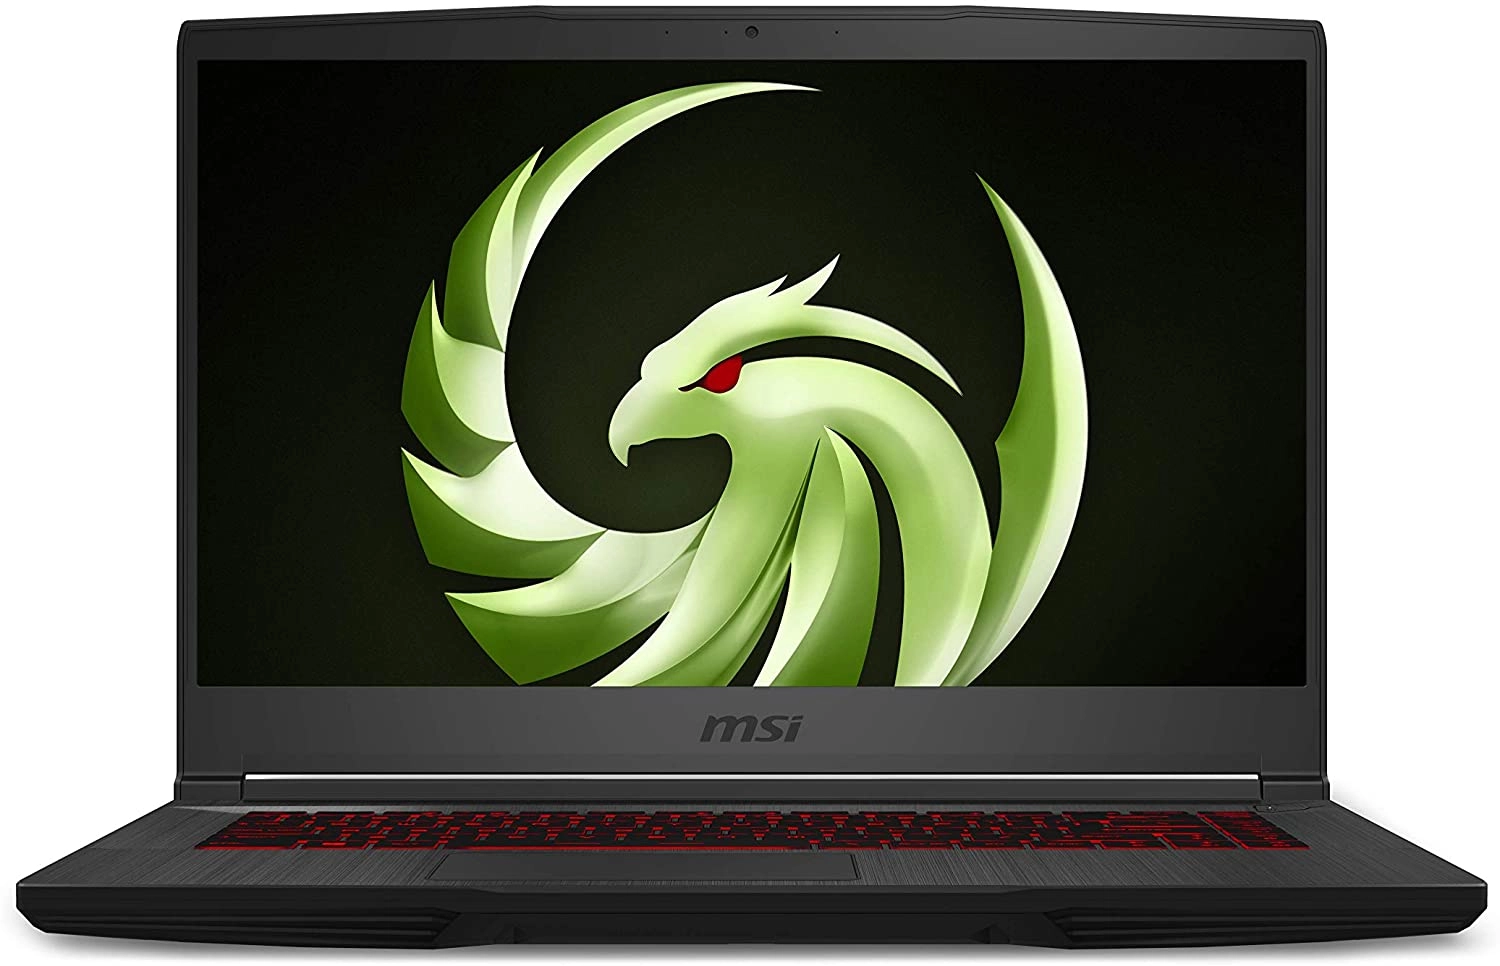 MSI 9S7-16WK12-219 laptop image